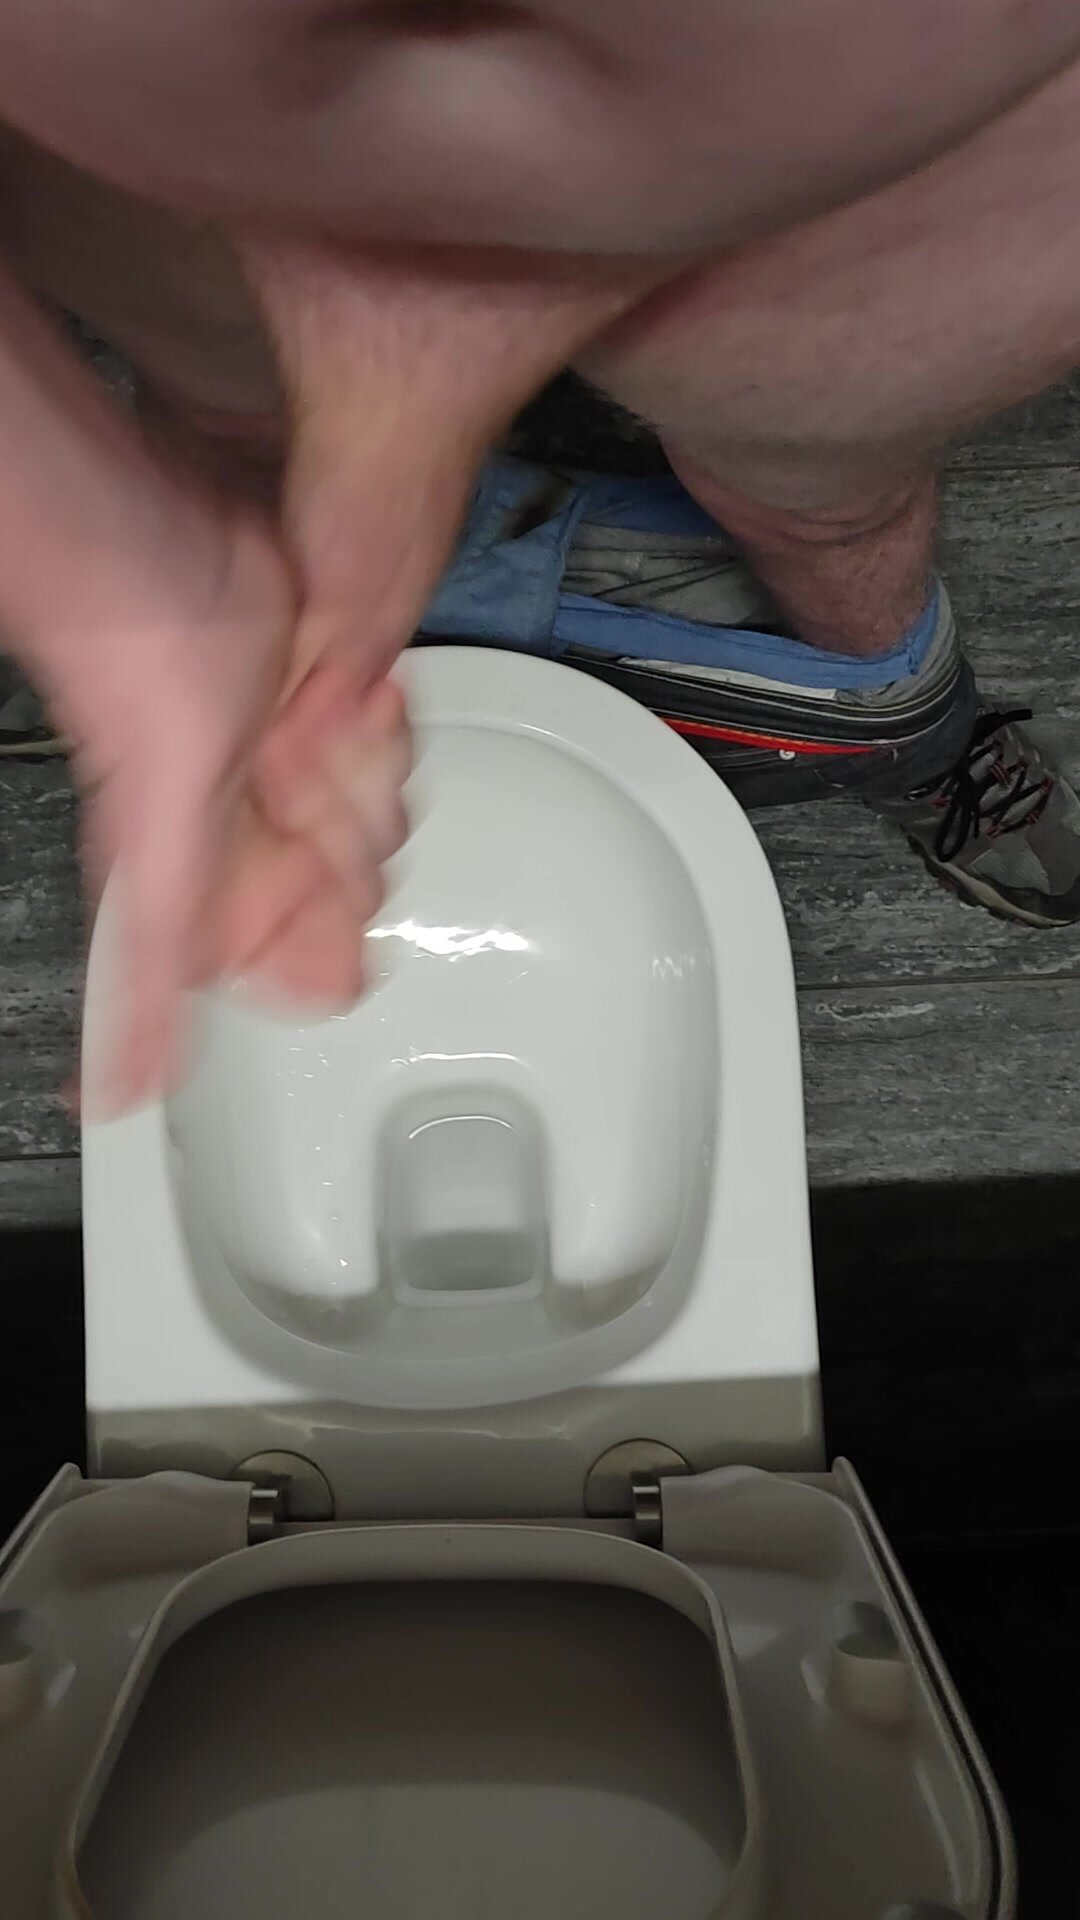 Cum in public toilet - video 4